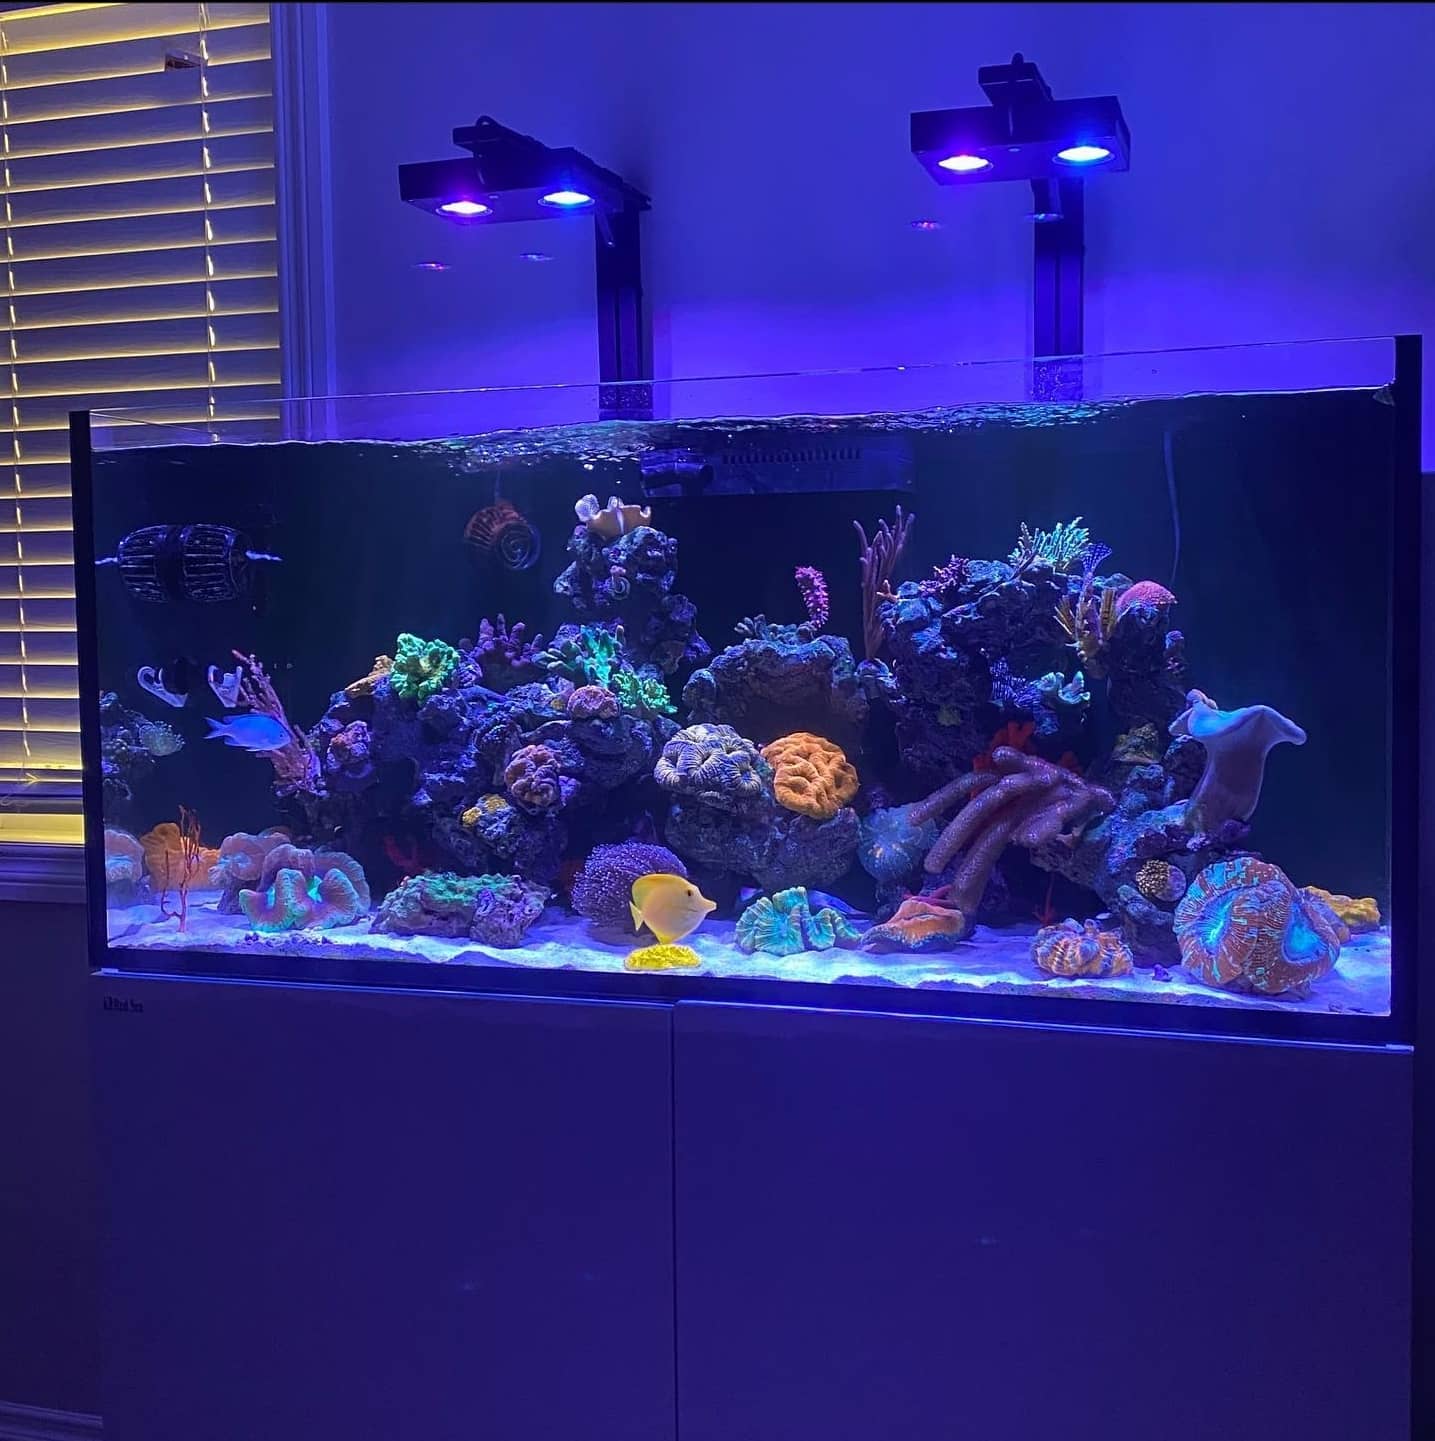 Beautiful Aquarium with Fish